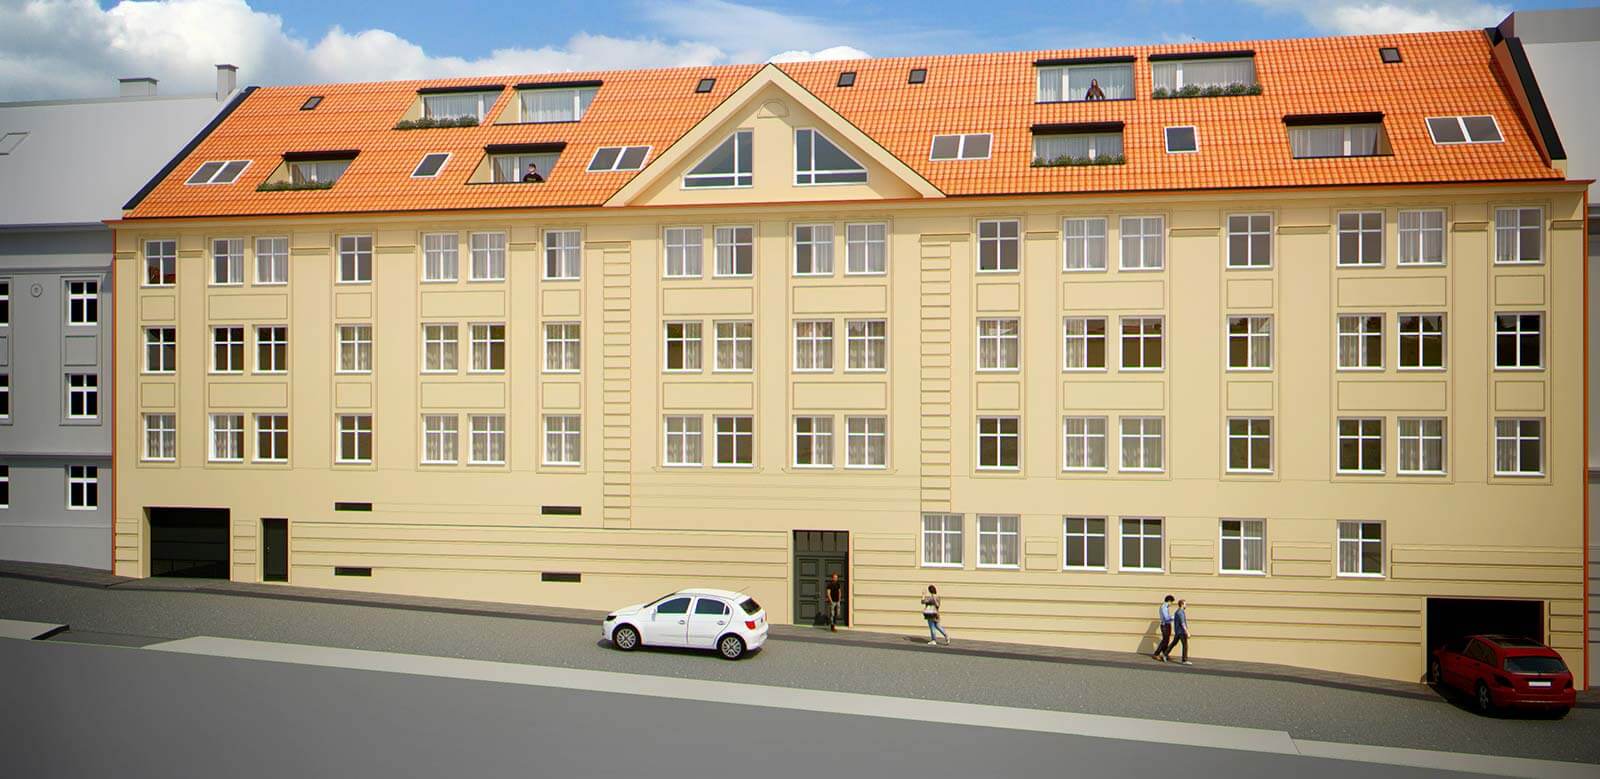 Predané: Novostavba 4 izbový byt, širšie centrum v Bratislave, Beskydská ulica, 90,37m2, balkón 4,5m2, štandard.-5